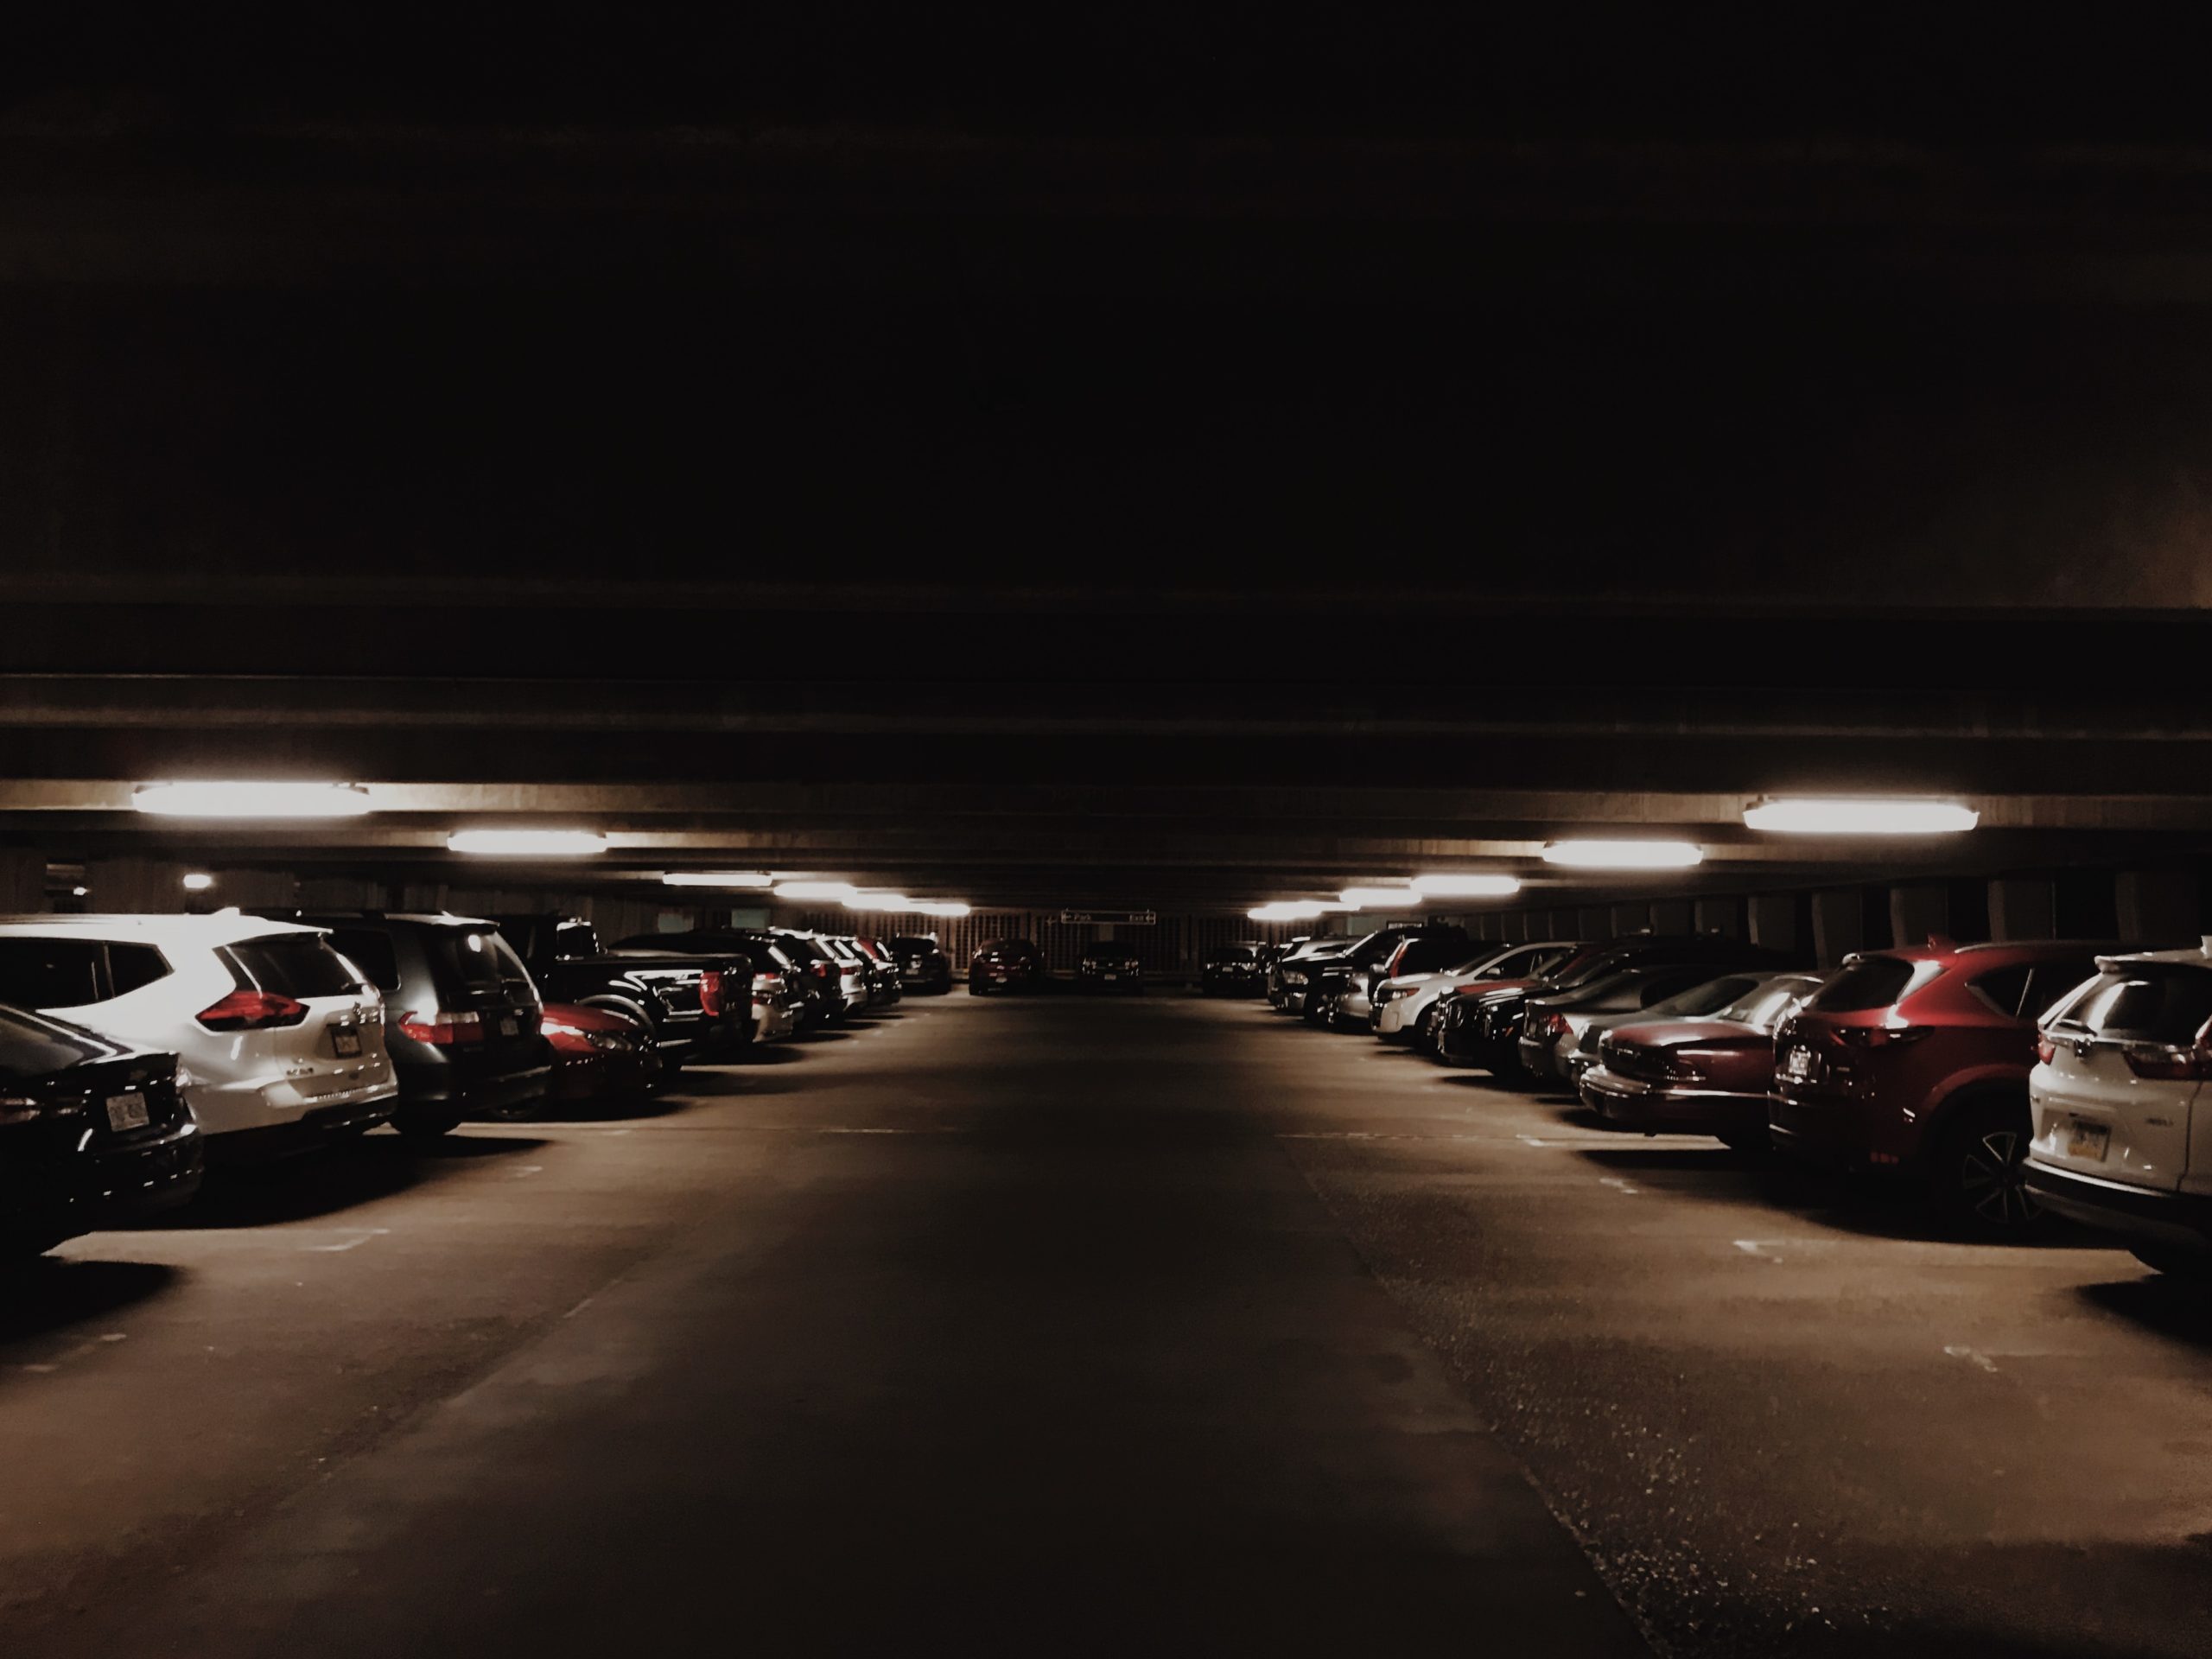 Parking garage lit at night